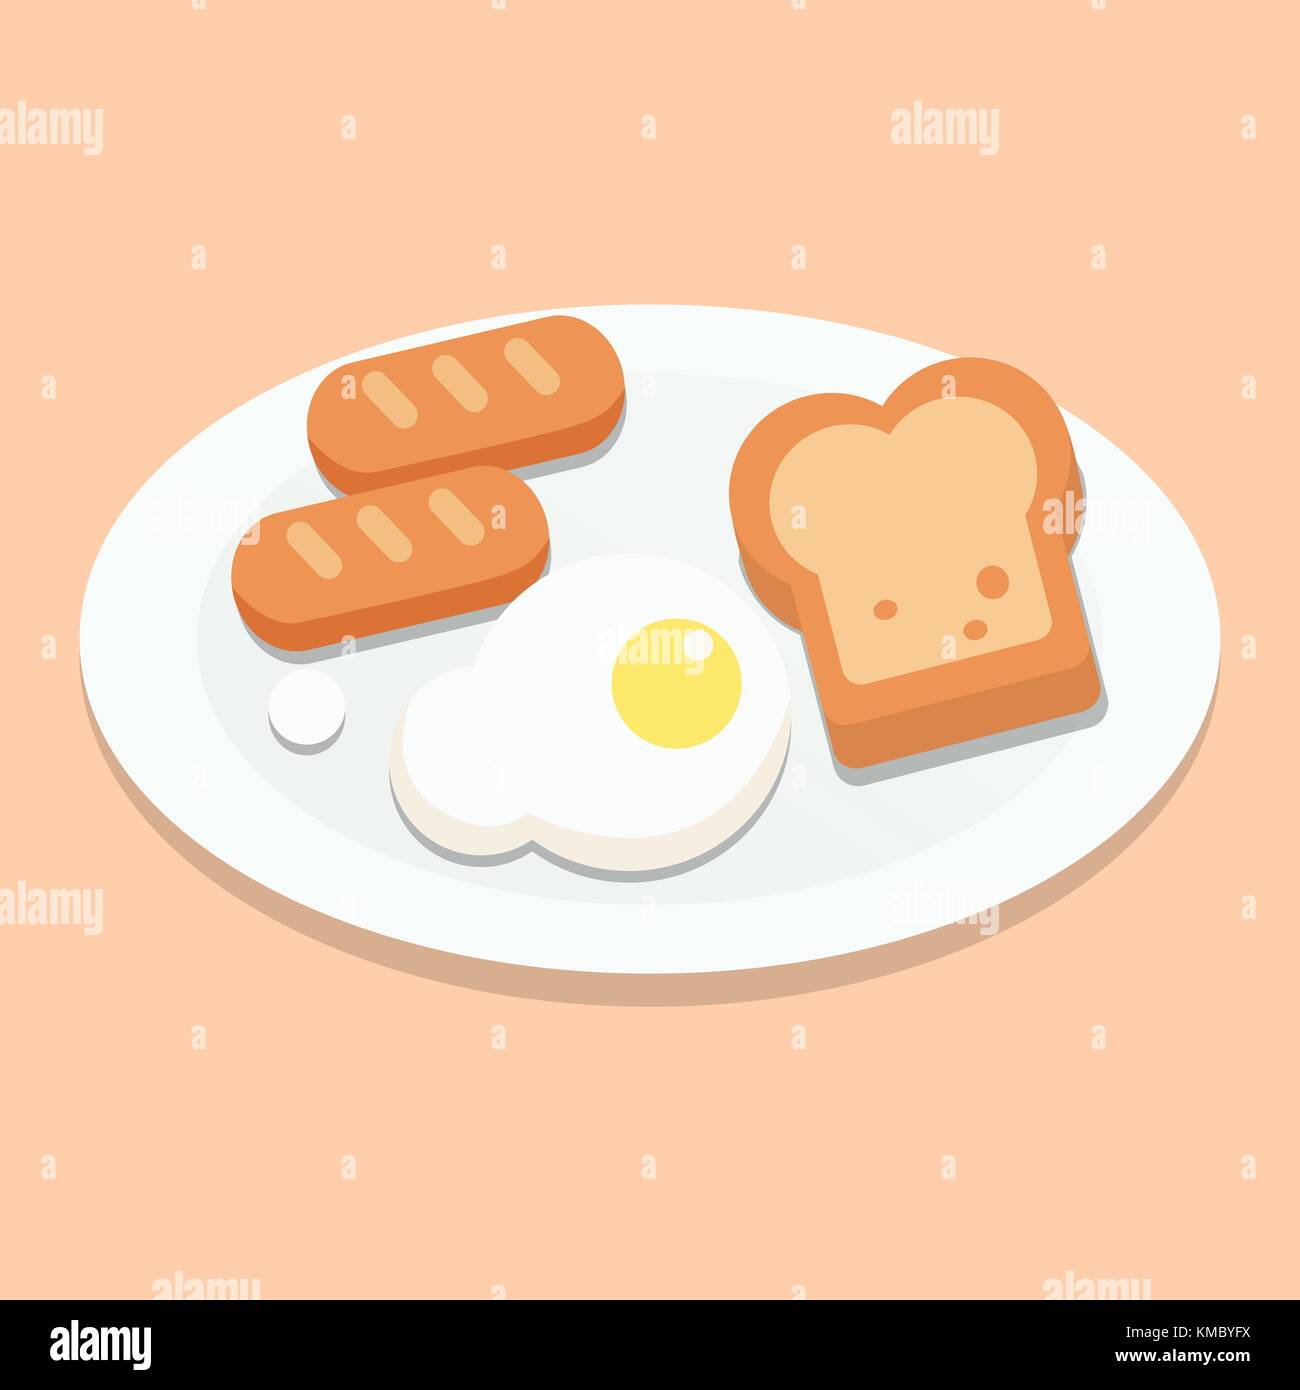 Frühstück mit Eiern, Brot und Würstchen auf Platte mit braunem Hintergrund Vektor Stock Vektor